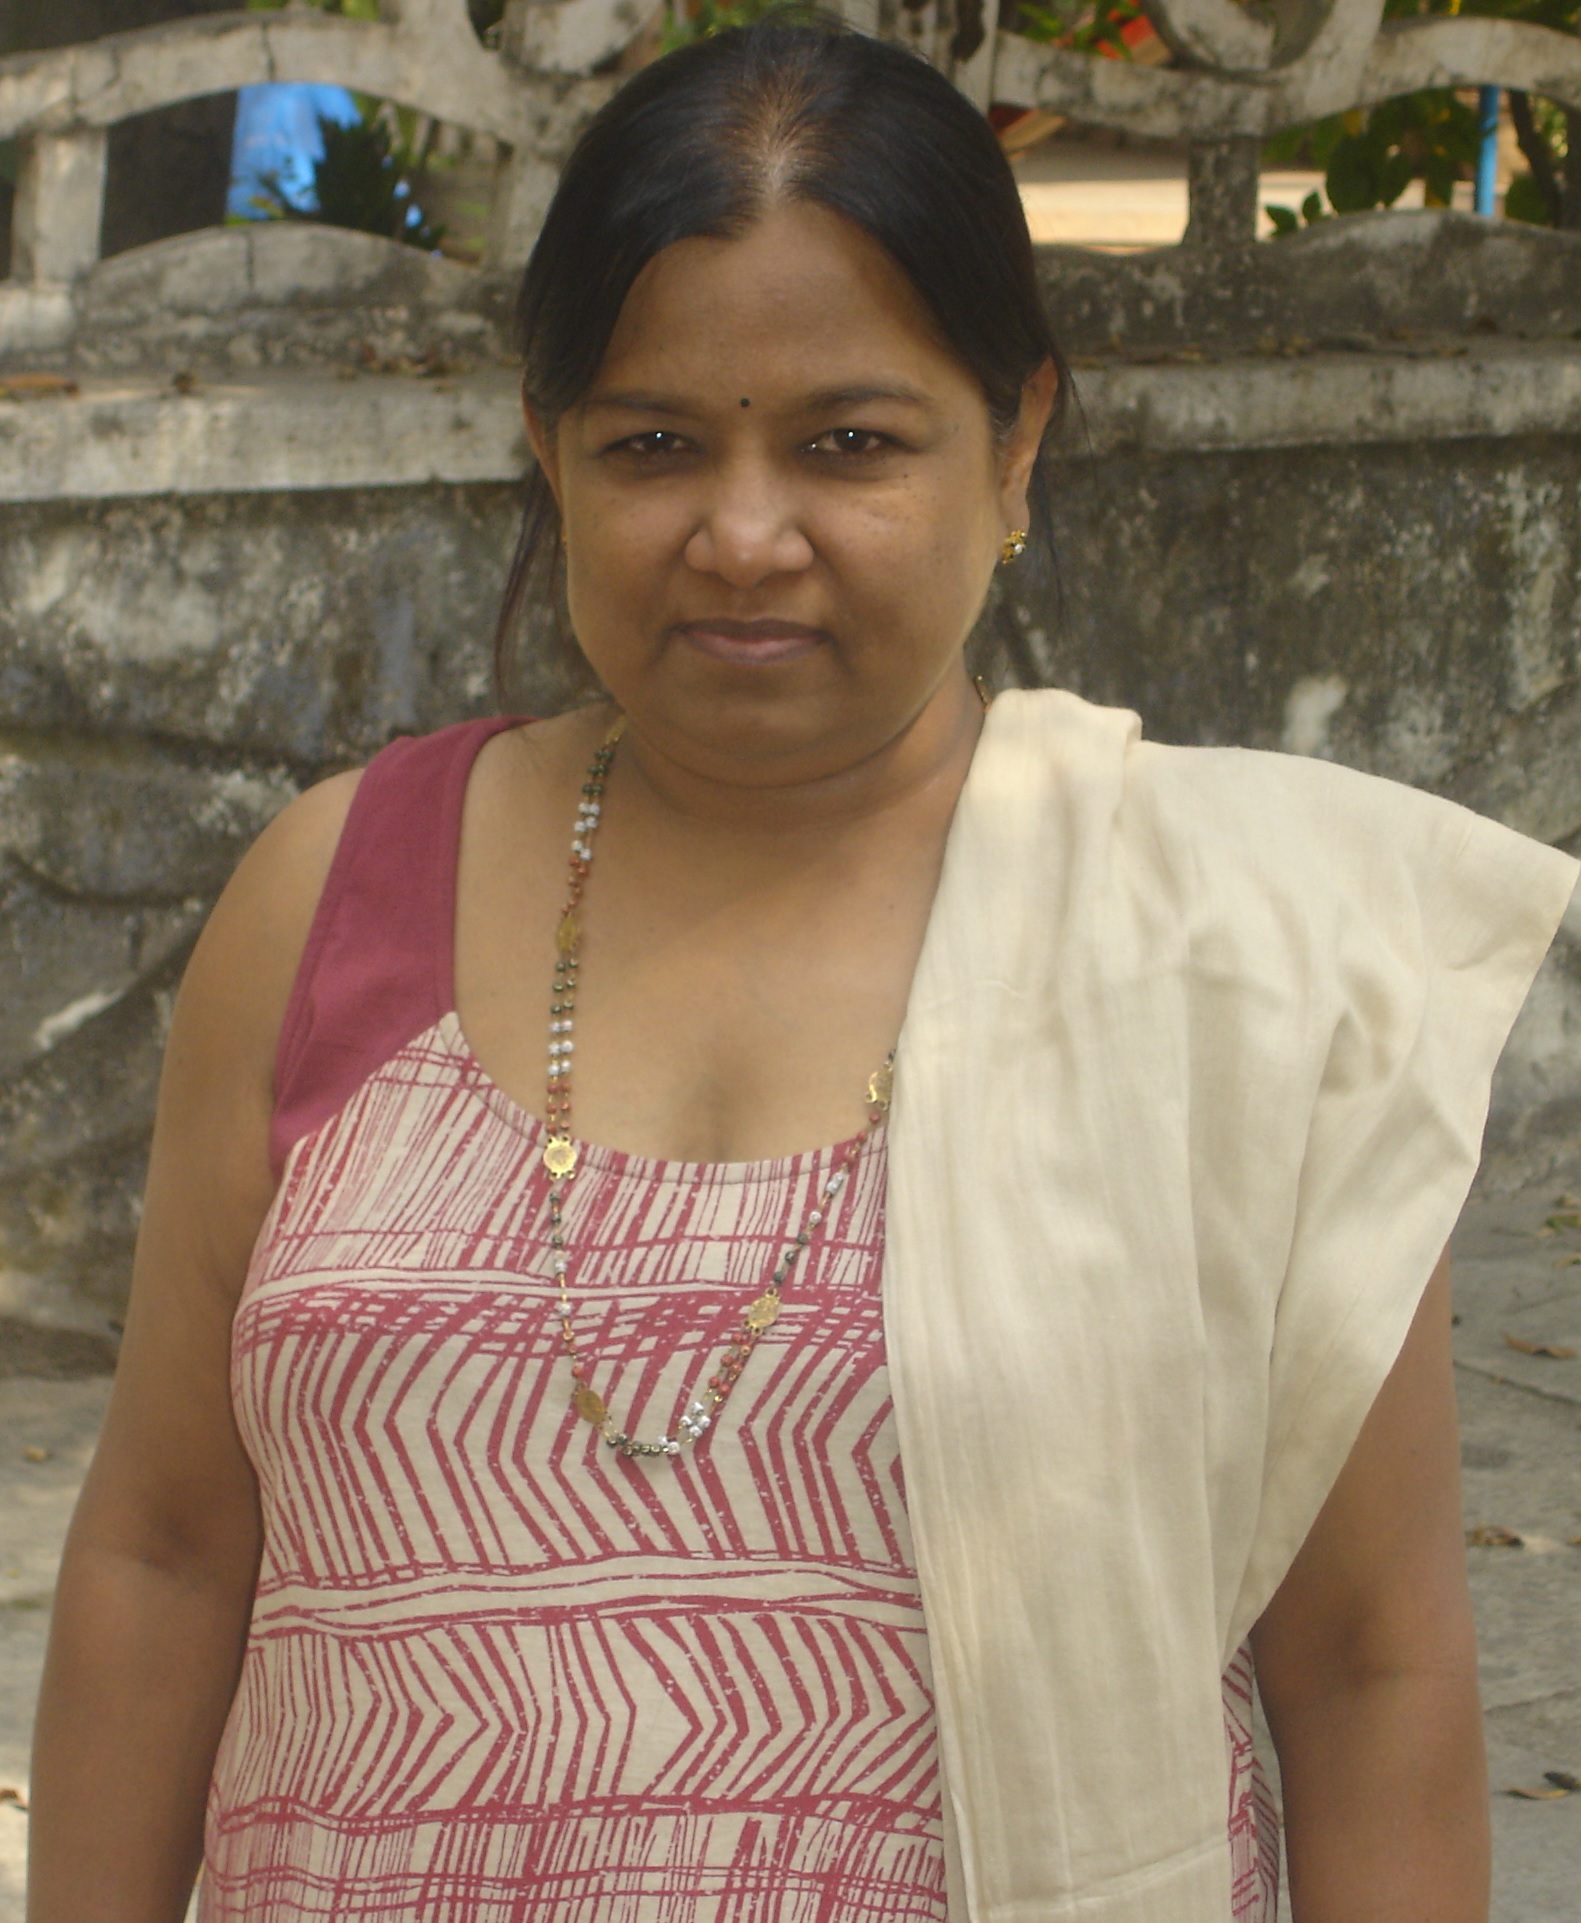 Sunita from India